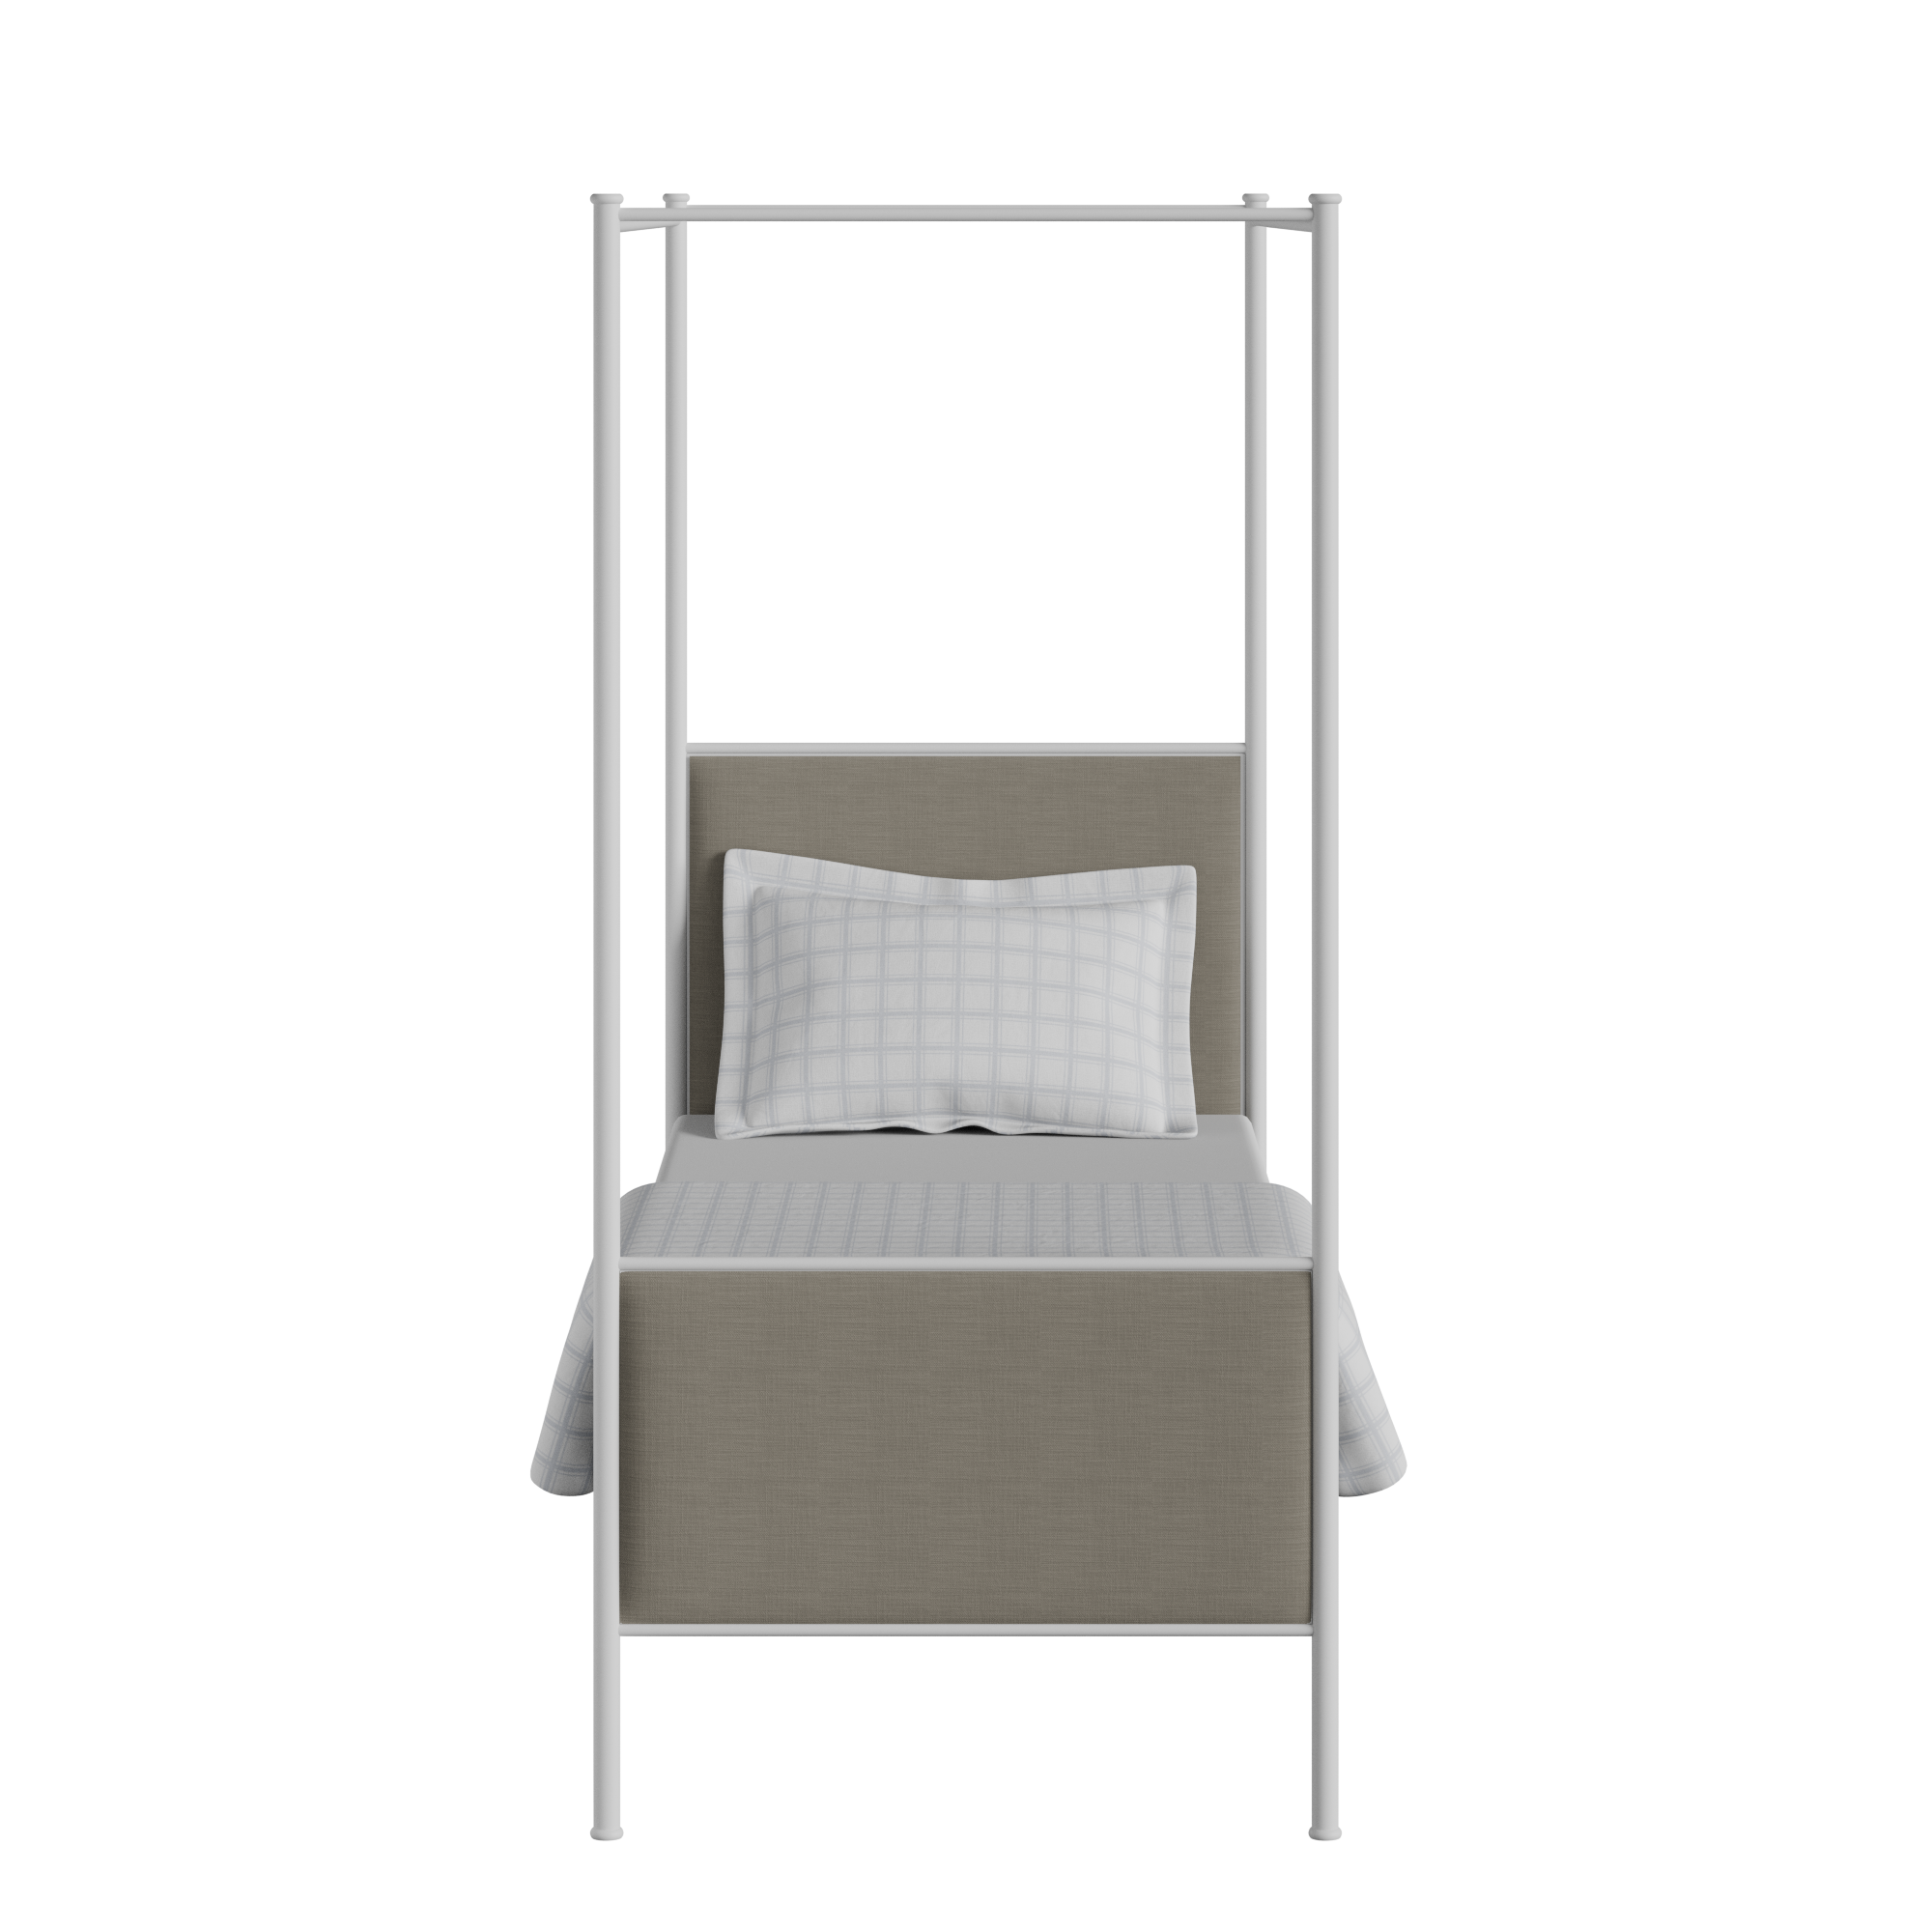 Reims cama individual de metal en blanco